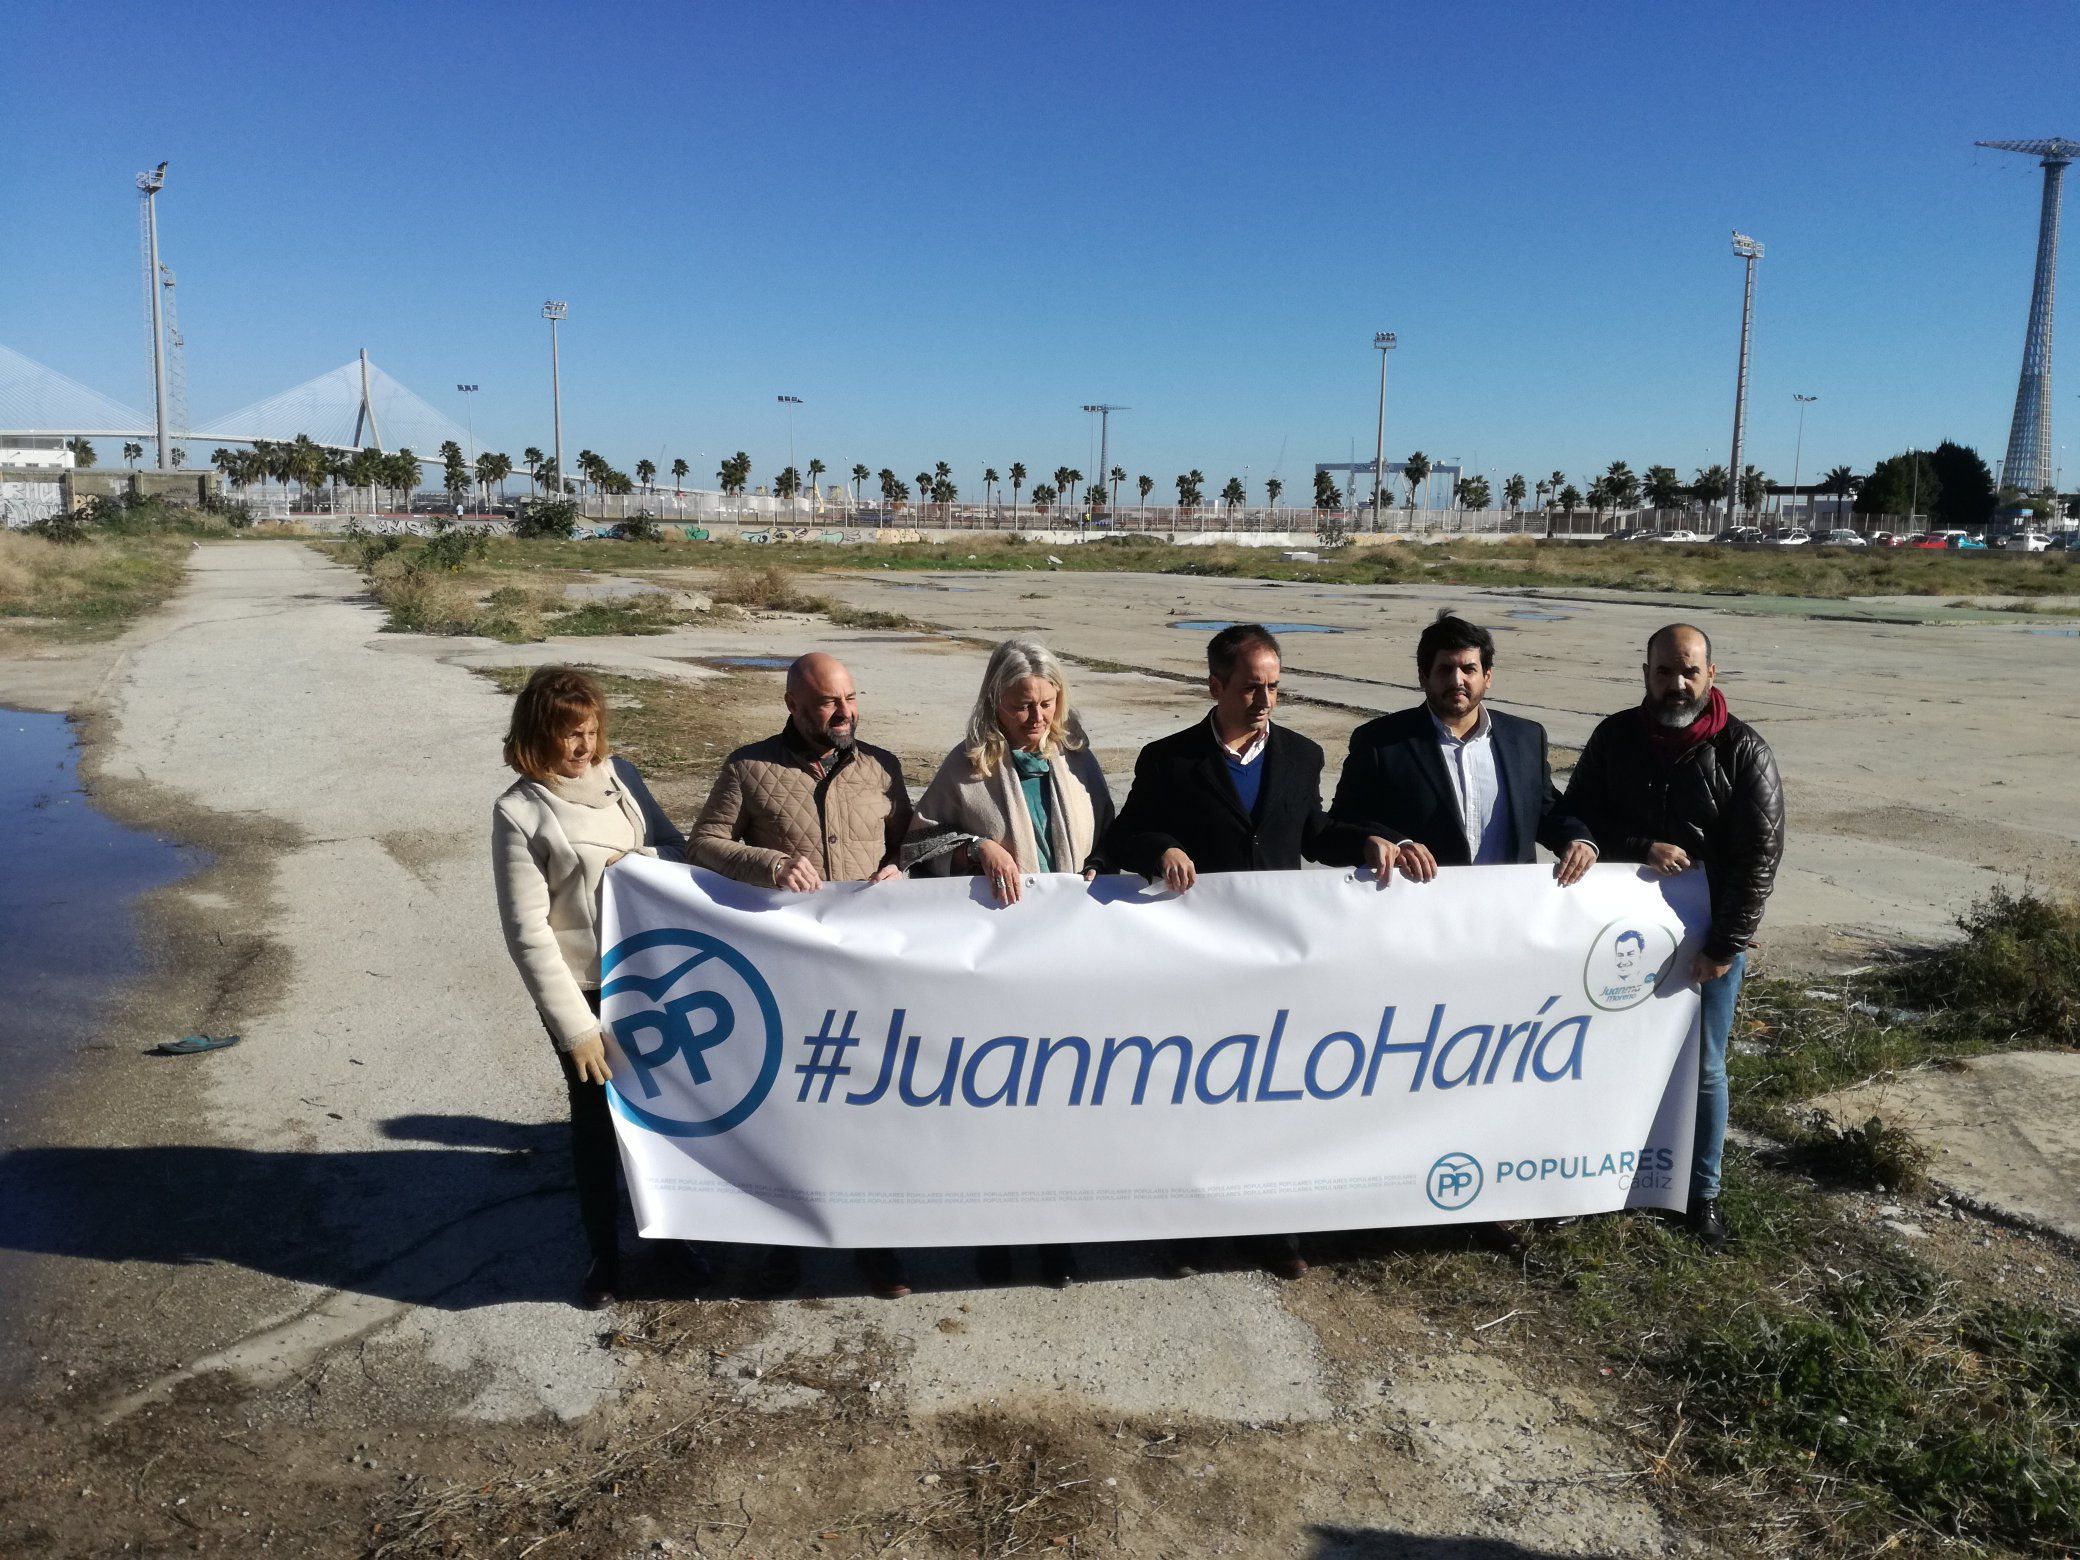 Representantes del PP, en una imagen retrospectiva, en los terrenos donde se iba a levantar el segundo hospital de Cádiz.